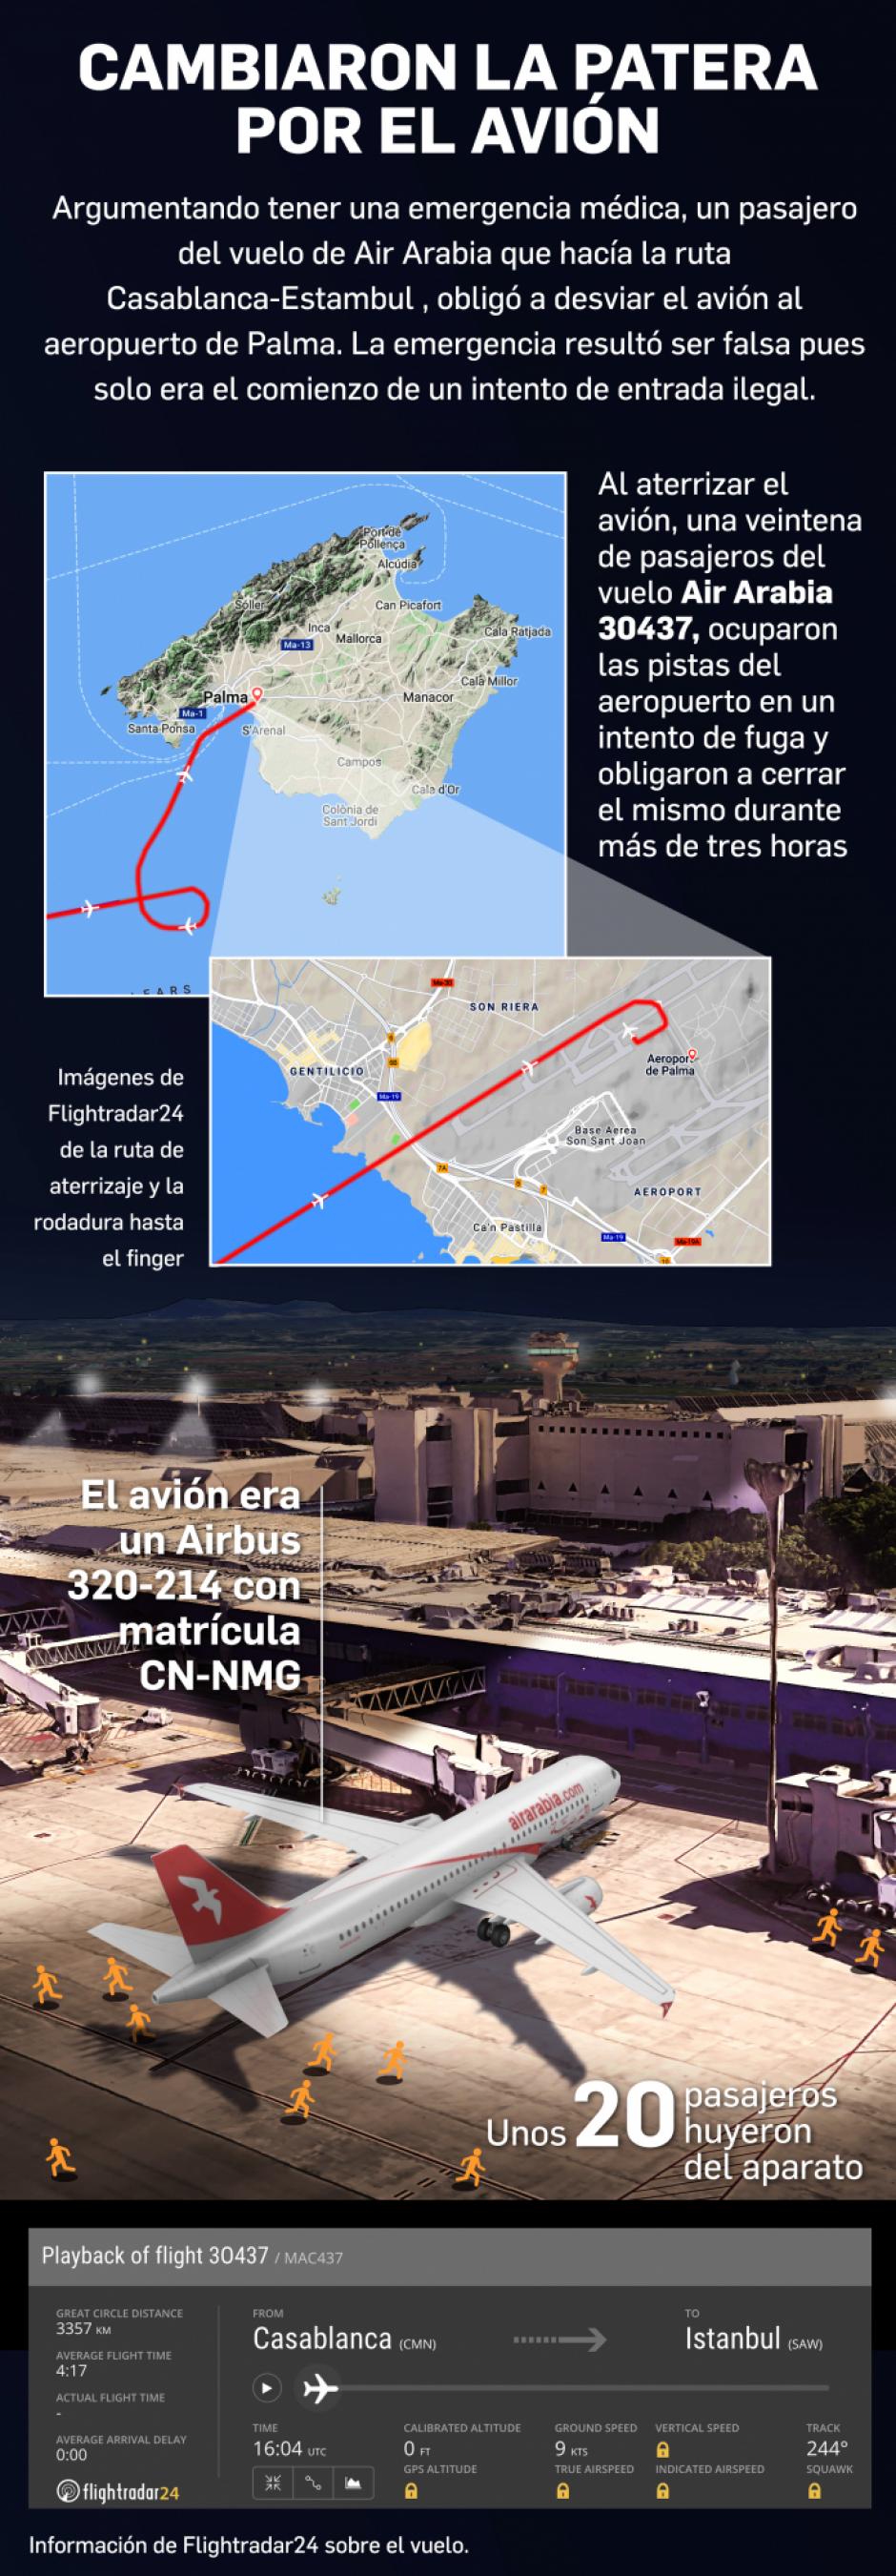 Gráfico explicativo del suceso en el aeropuerto de Palma